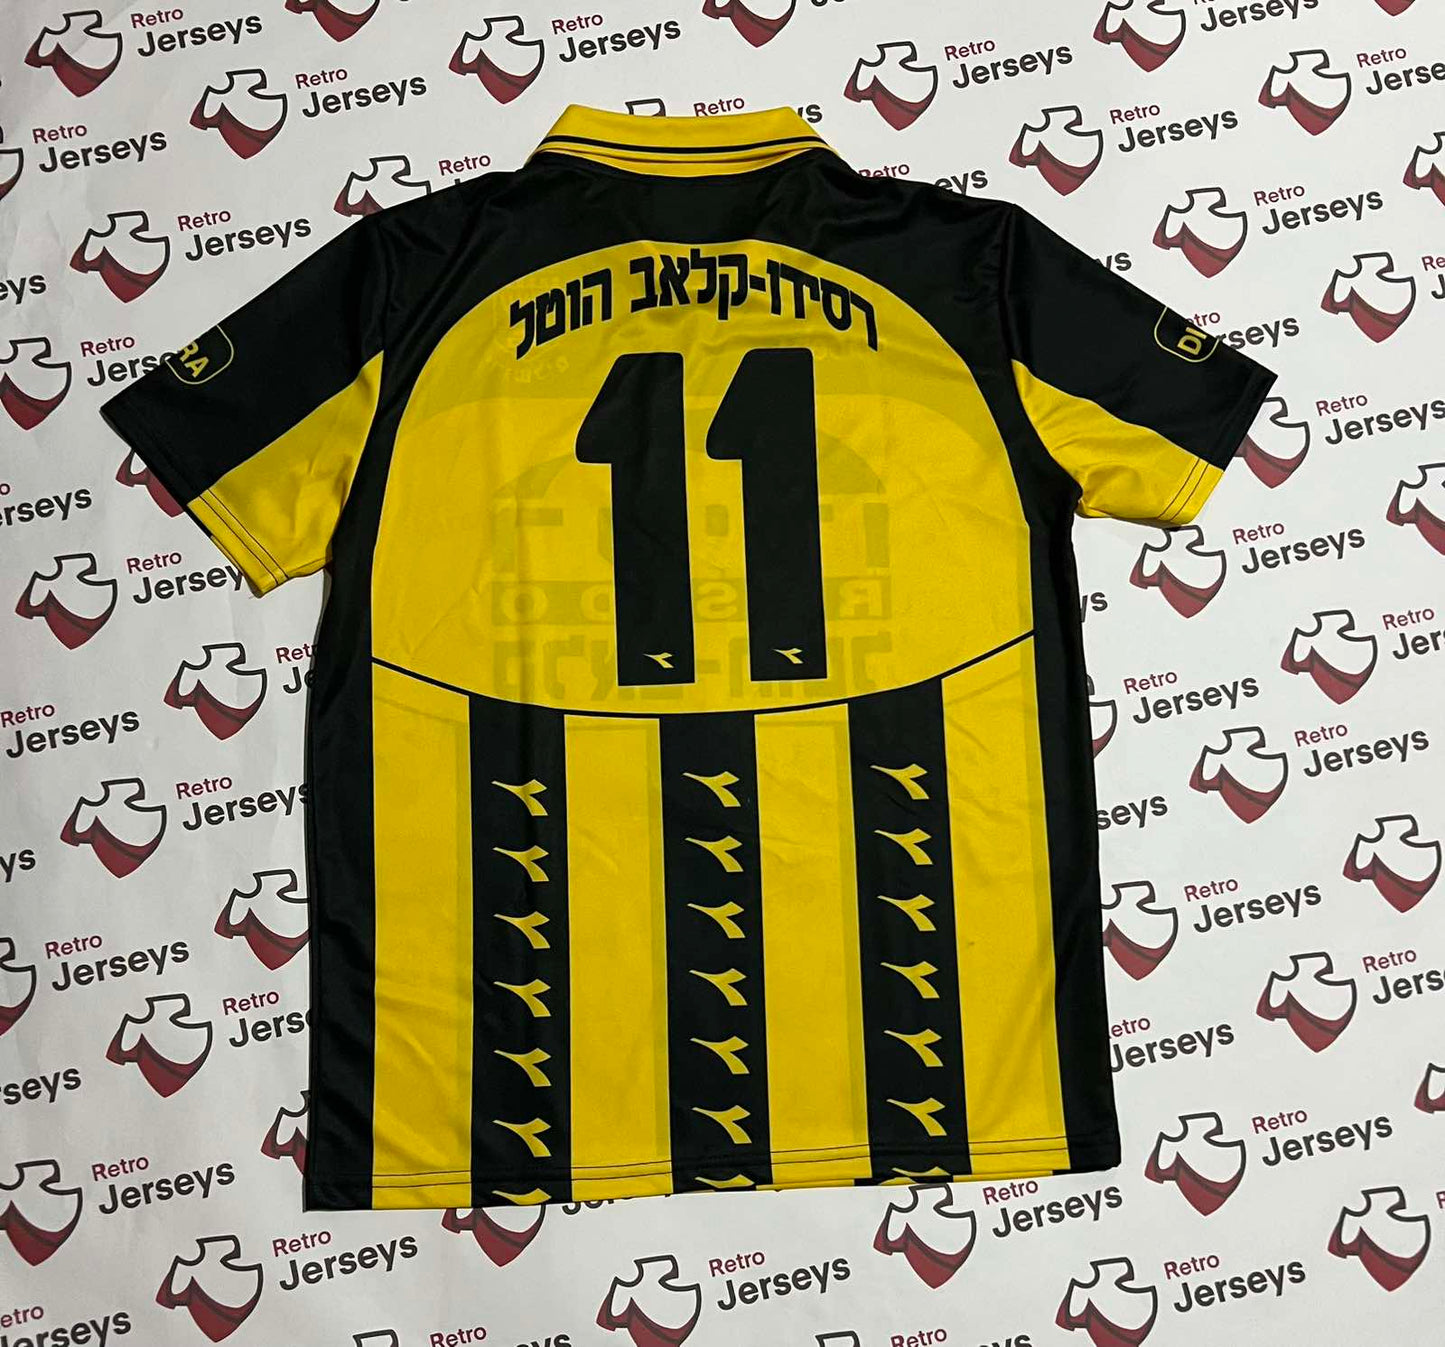 Beitar Jerusalem 1996-1997 Shirt - Retro Jerseys - Retro Jerseys